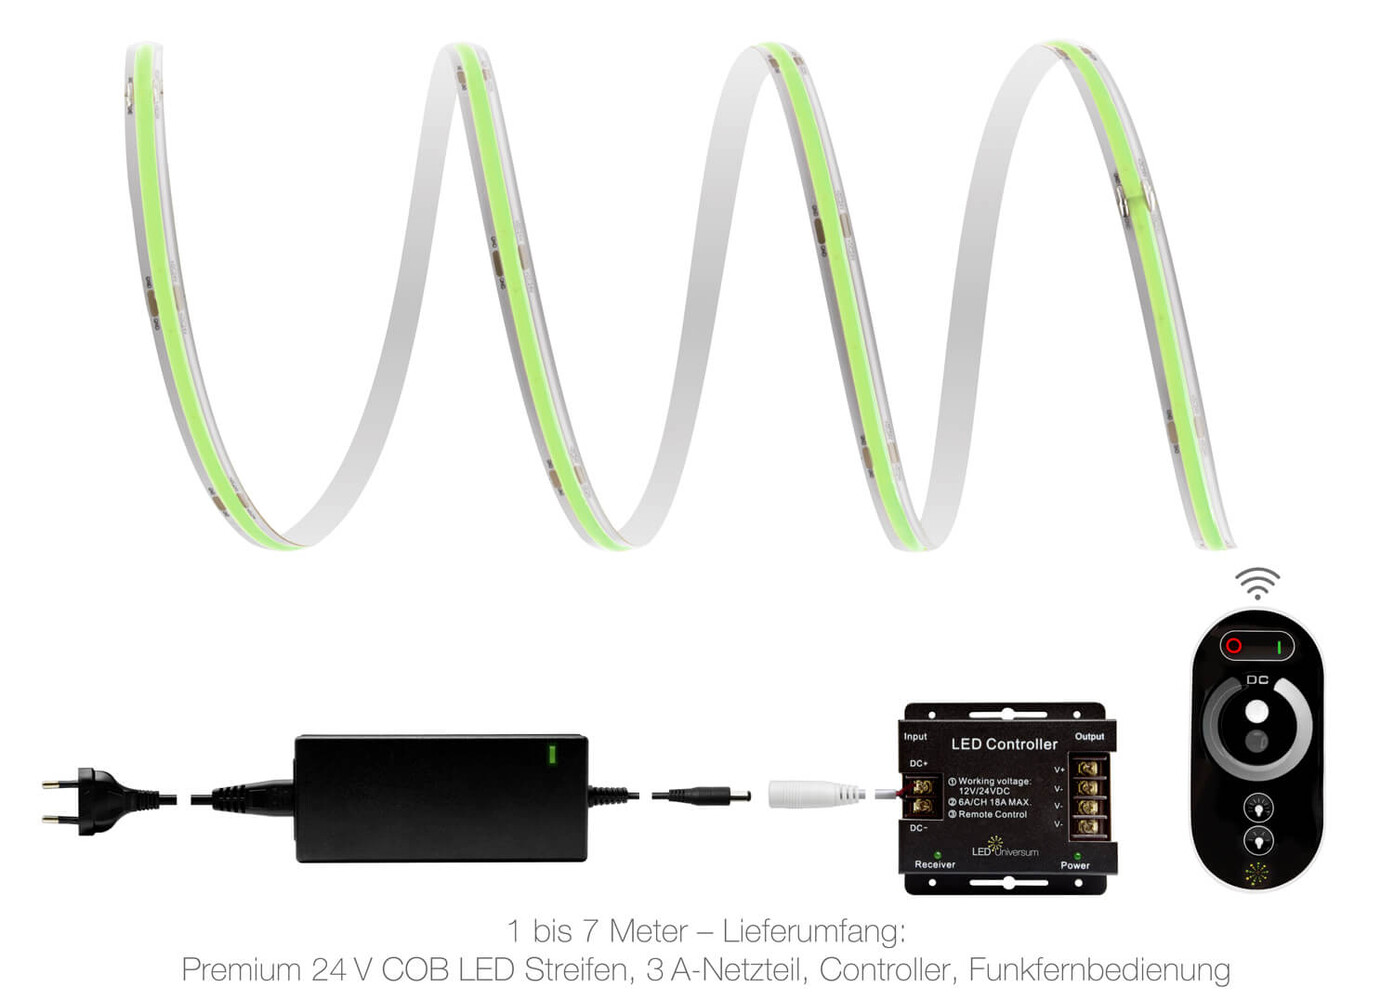 Hochwertiger grüner LED Streifen von LED Universum mit Premium-Features und IP65-Funkset, inklusive Netzteil